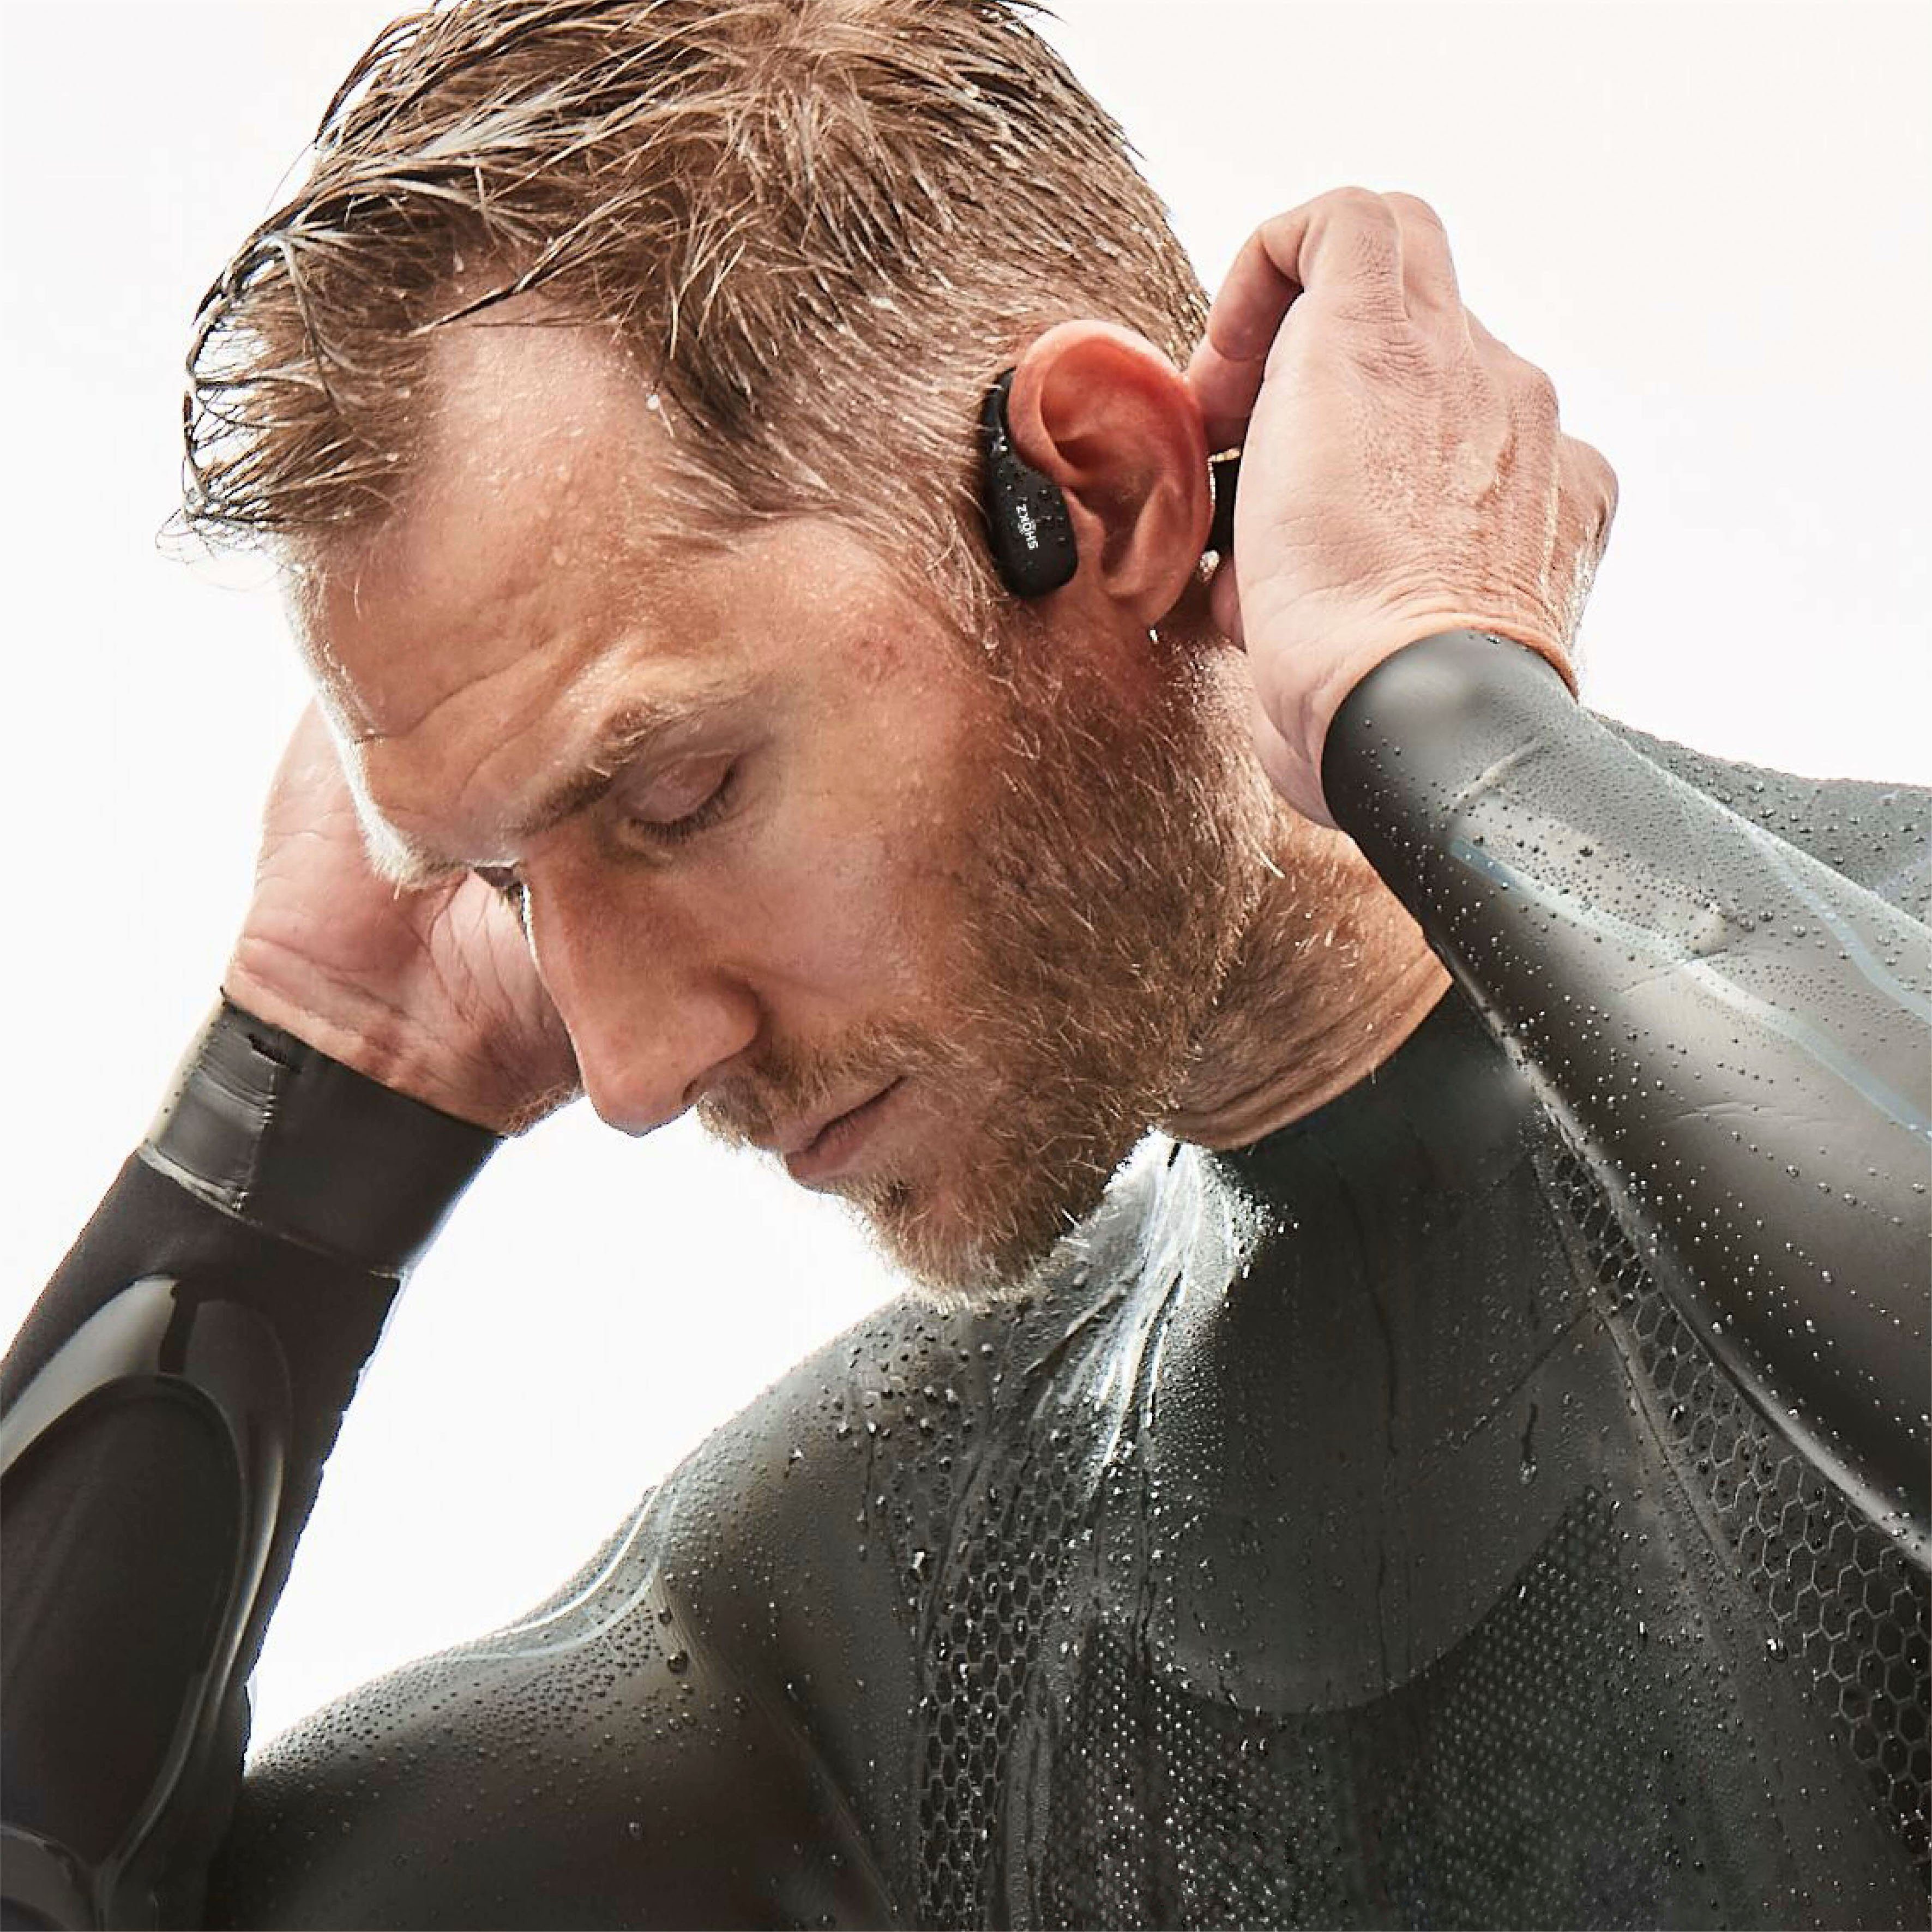 Shokz OpenSwim MP3 Kopfhörer Kopfhörer Blau